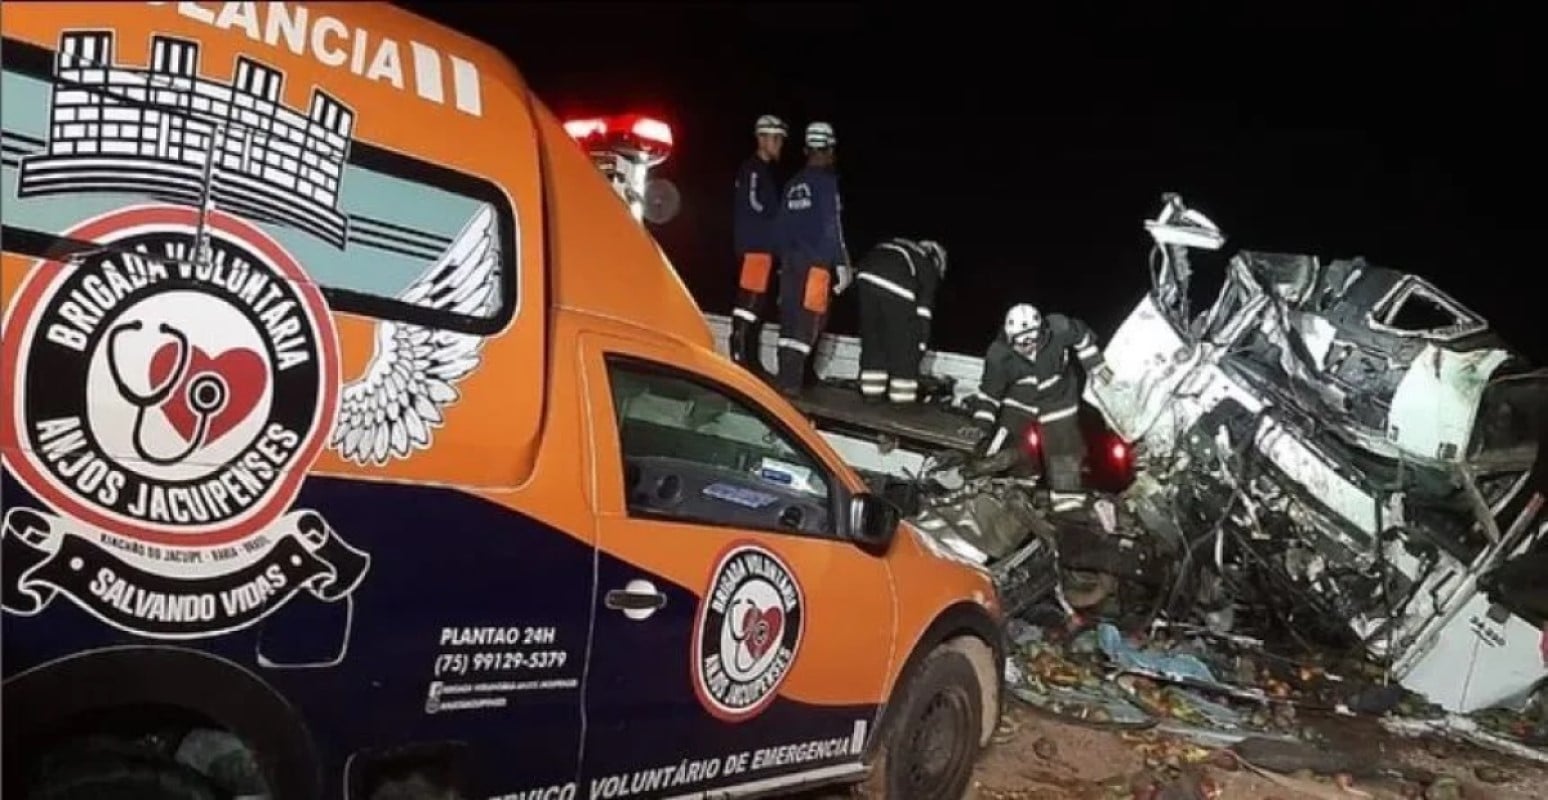 Tragédia na BR-324: Colisão entre ônibus e caminhão deixa 25 mortos na Bahia (BA)